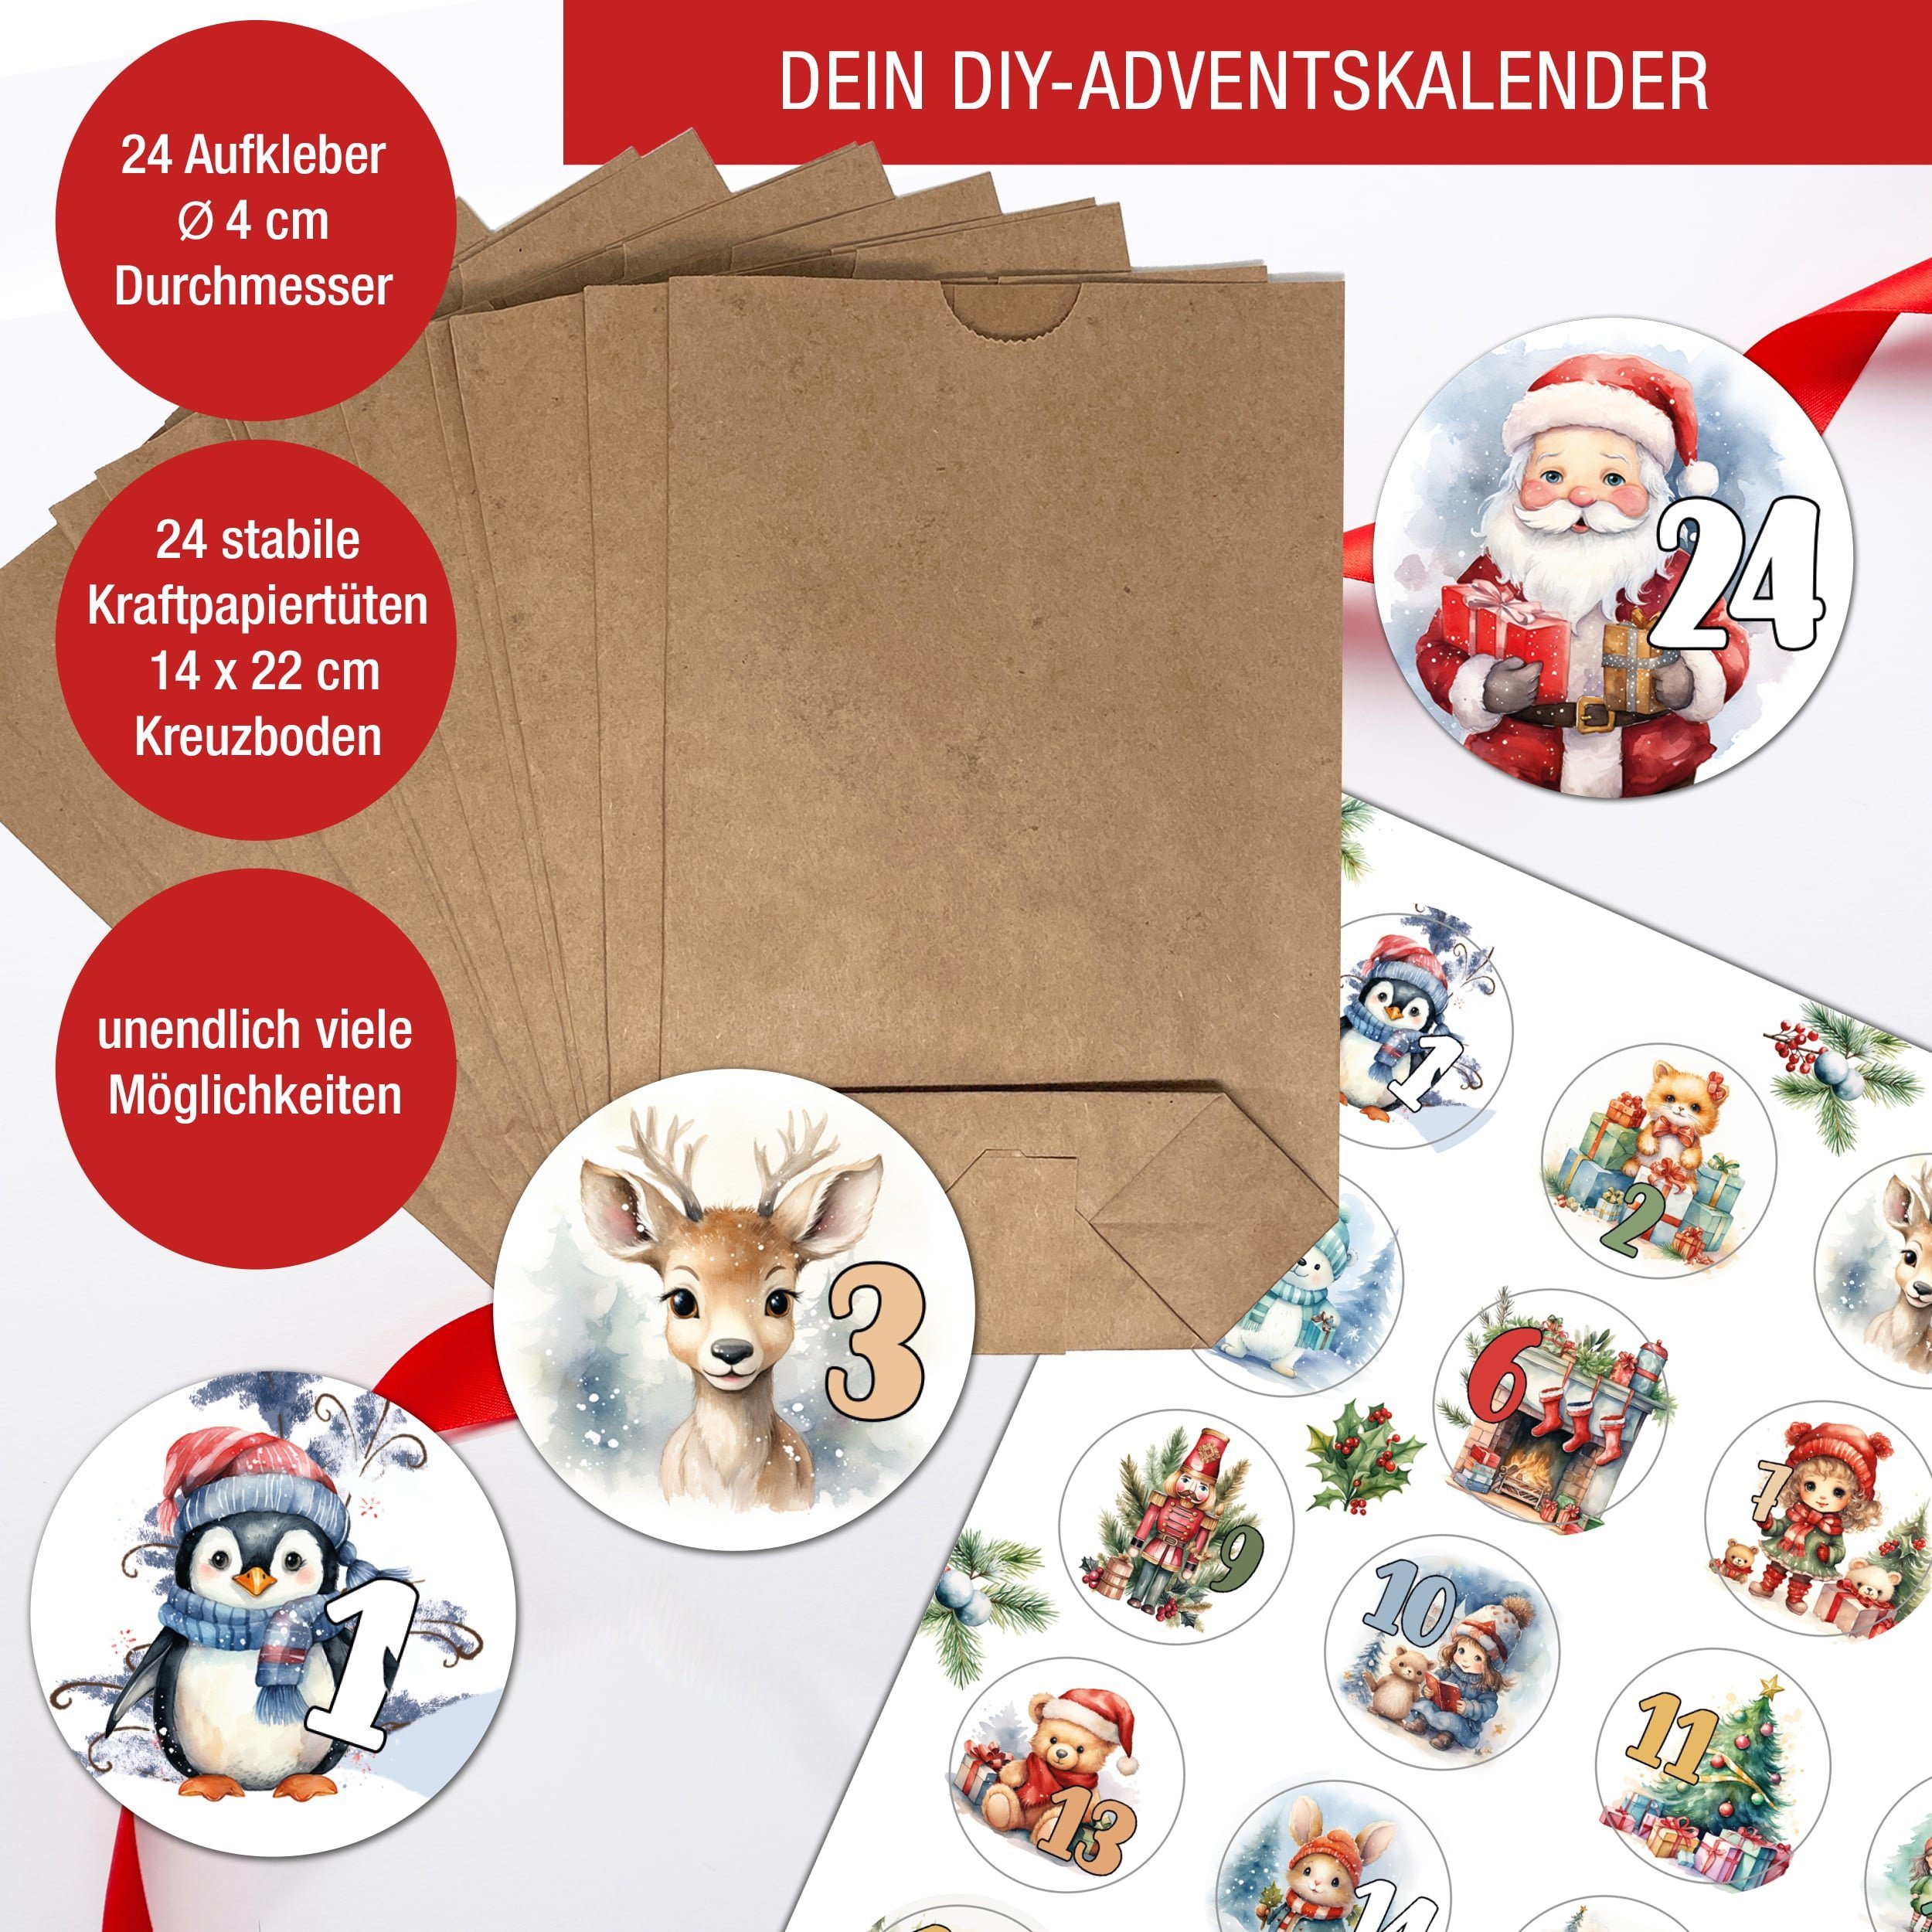 Kartpapier zum befüllen, basteln 24 Weihnachskalender Aufkleber, Adventskalender DIY + Tüten TOBJA Adventskalender